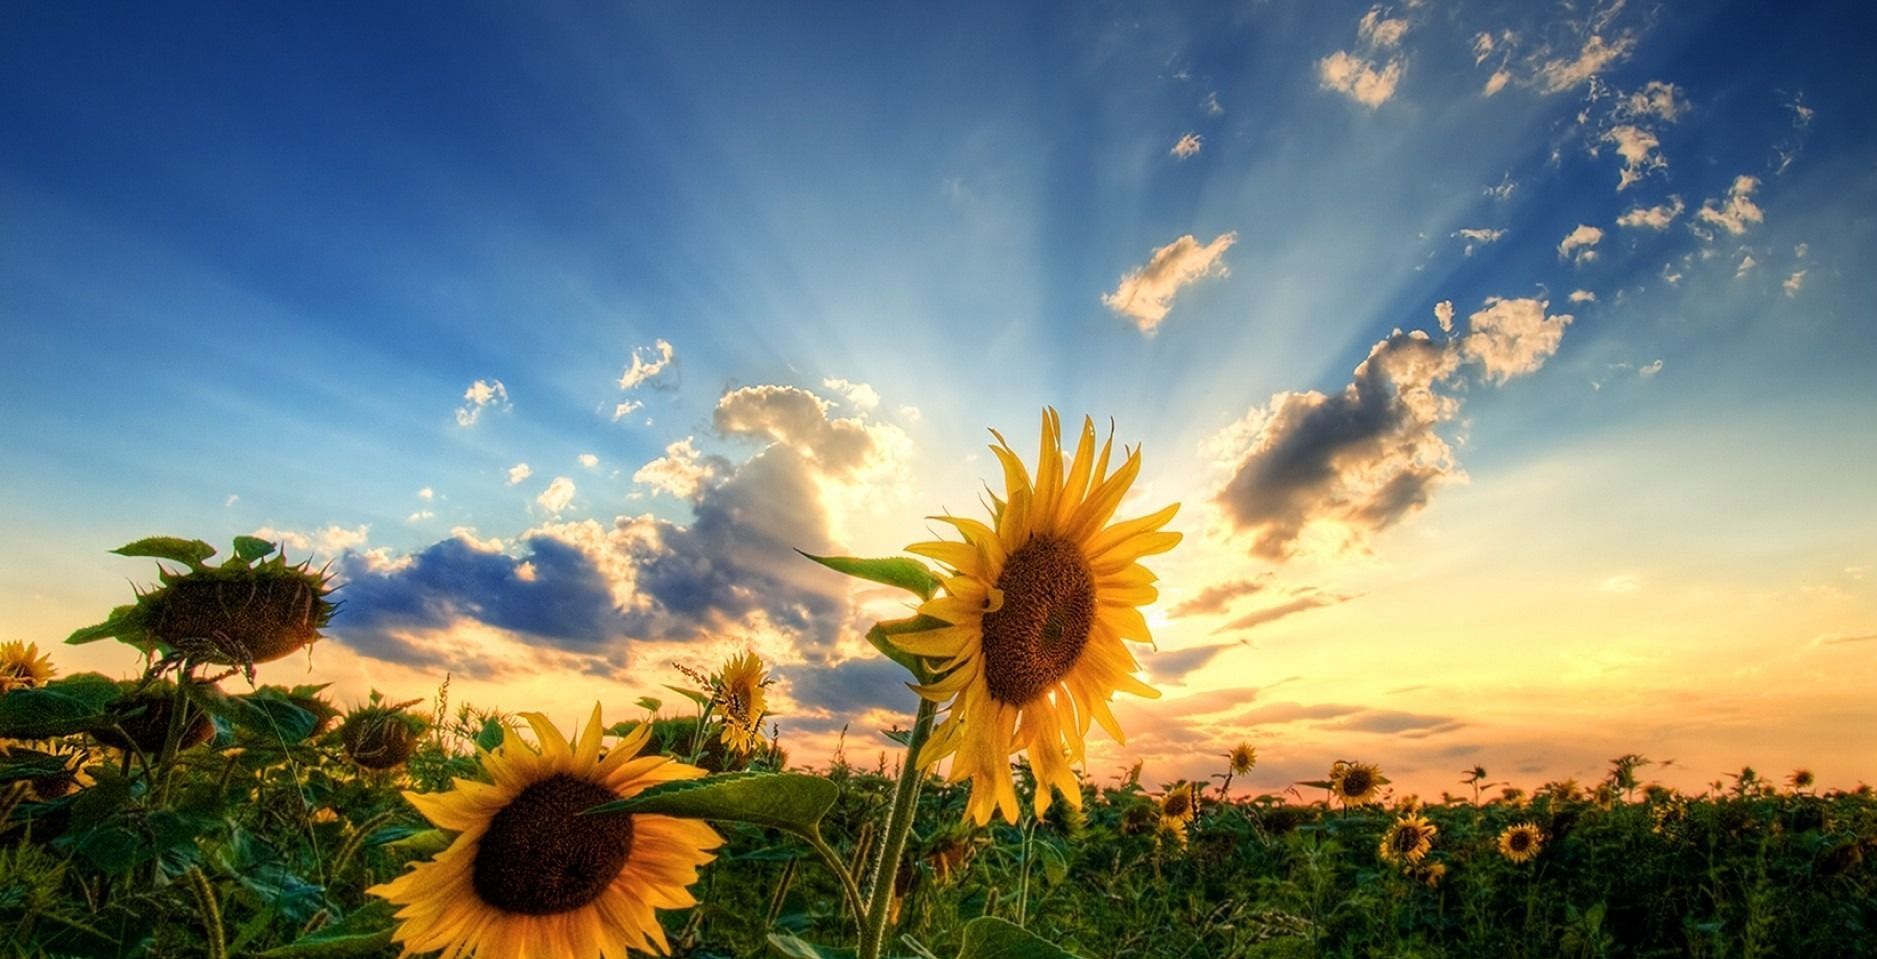 hd wallpapers 1080p widescreen,sunflower,sky,nature,flower,sunflower